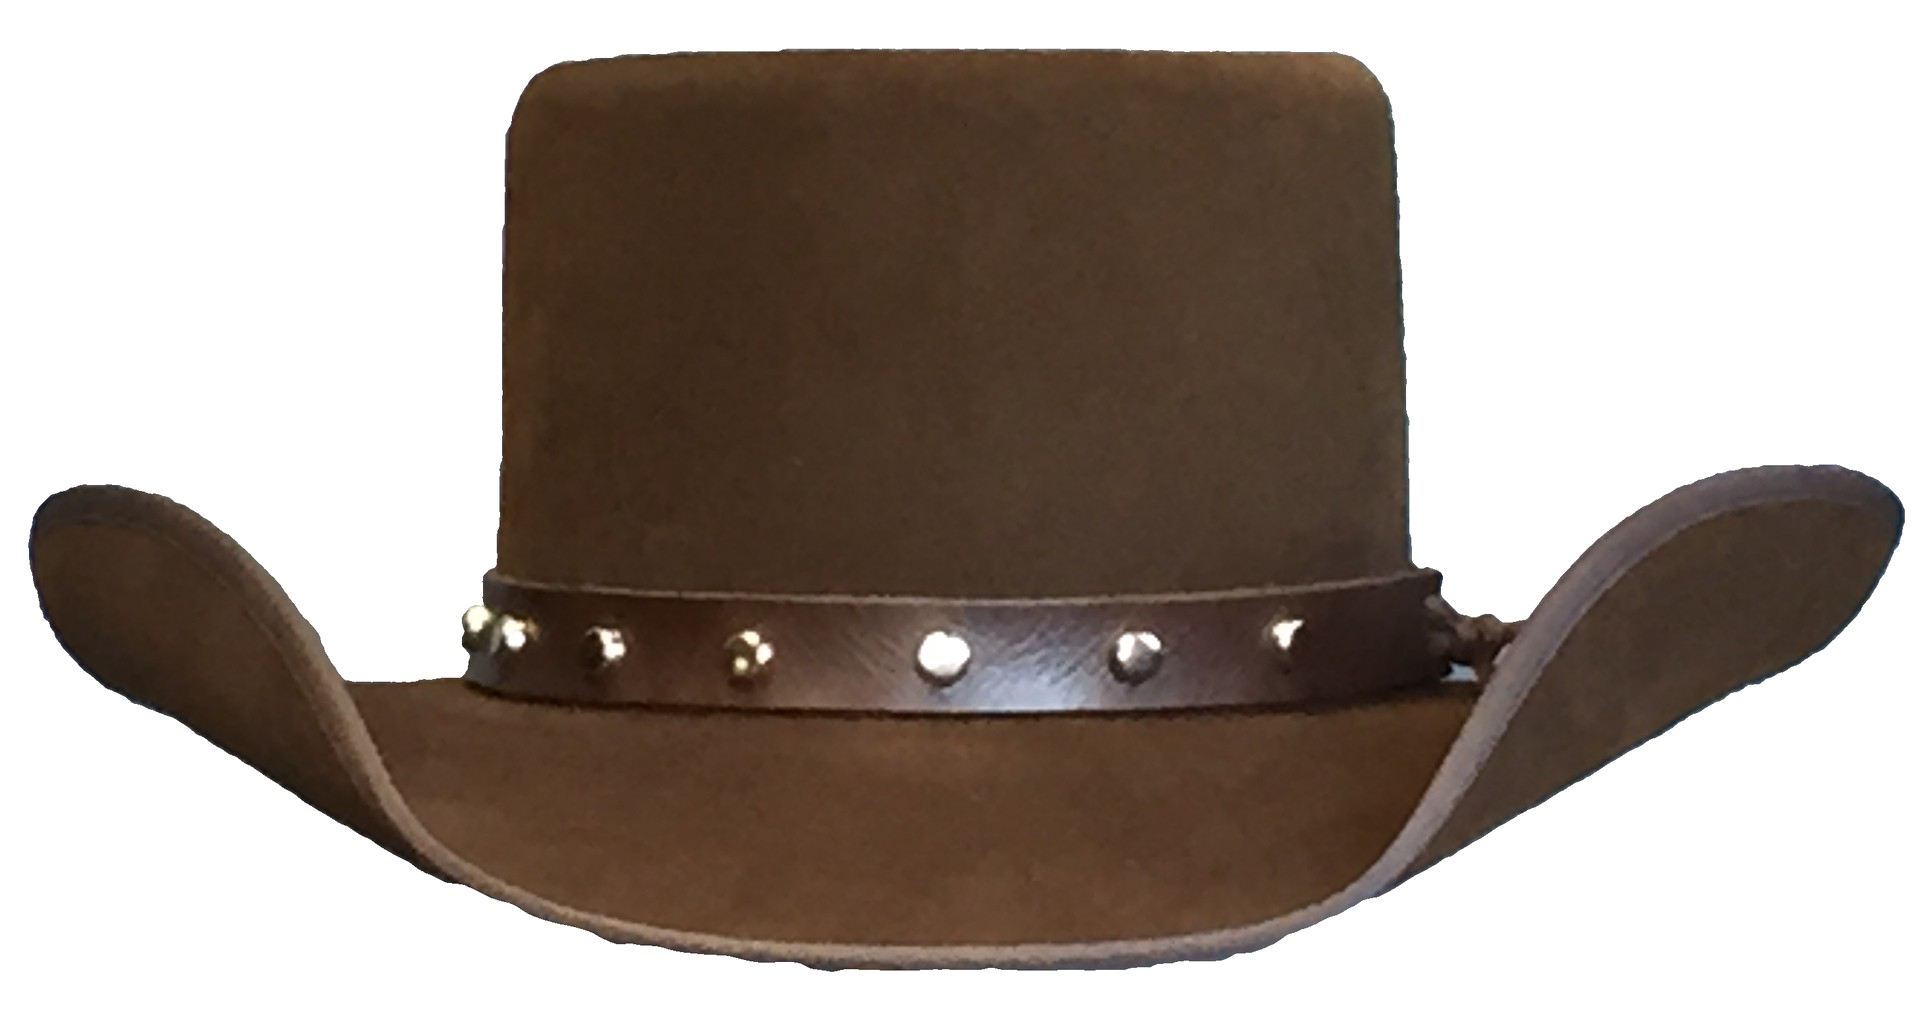 Cowboy Hat PNG Image